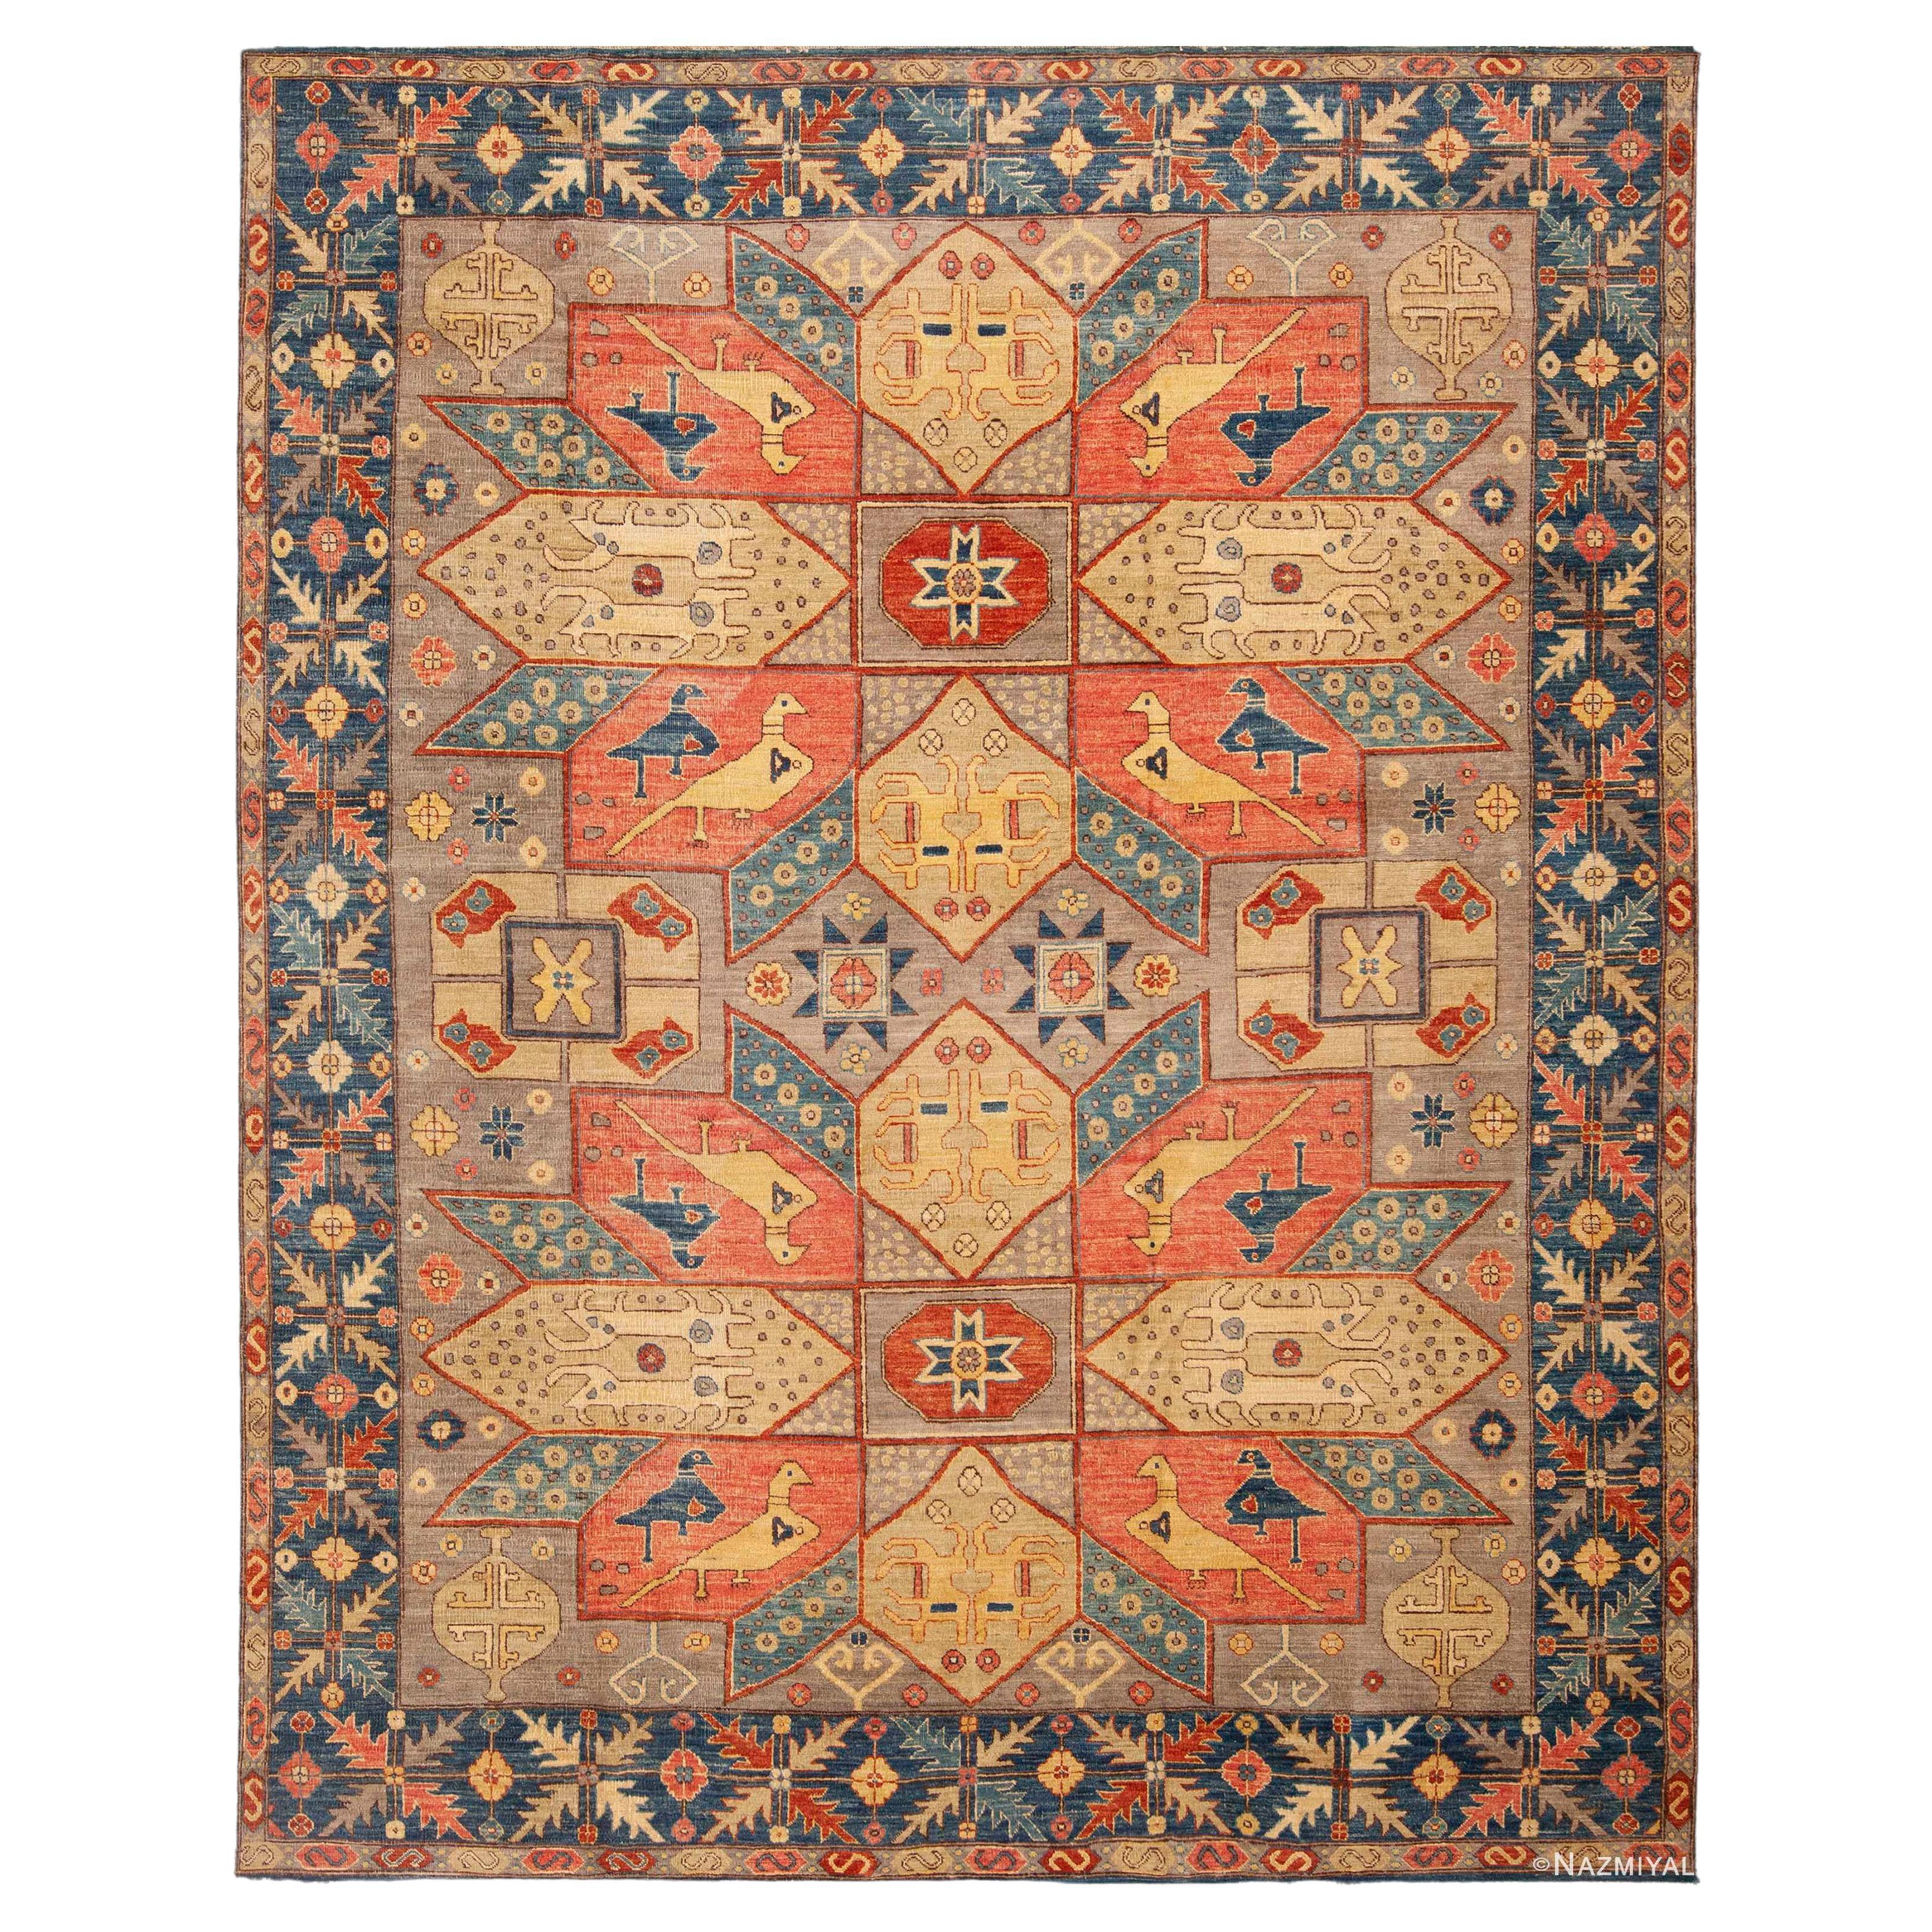 Nazmiyal Kollektion Stammes-Geometrischer moderner Teppich in Tierdesign 8'4" x 10'4"